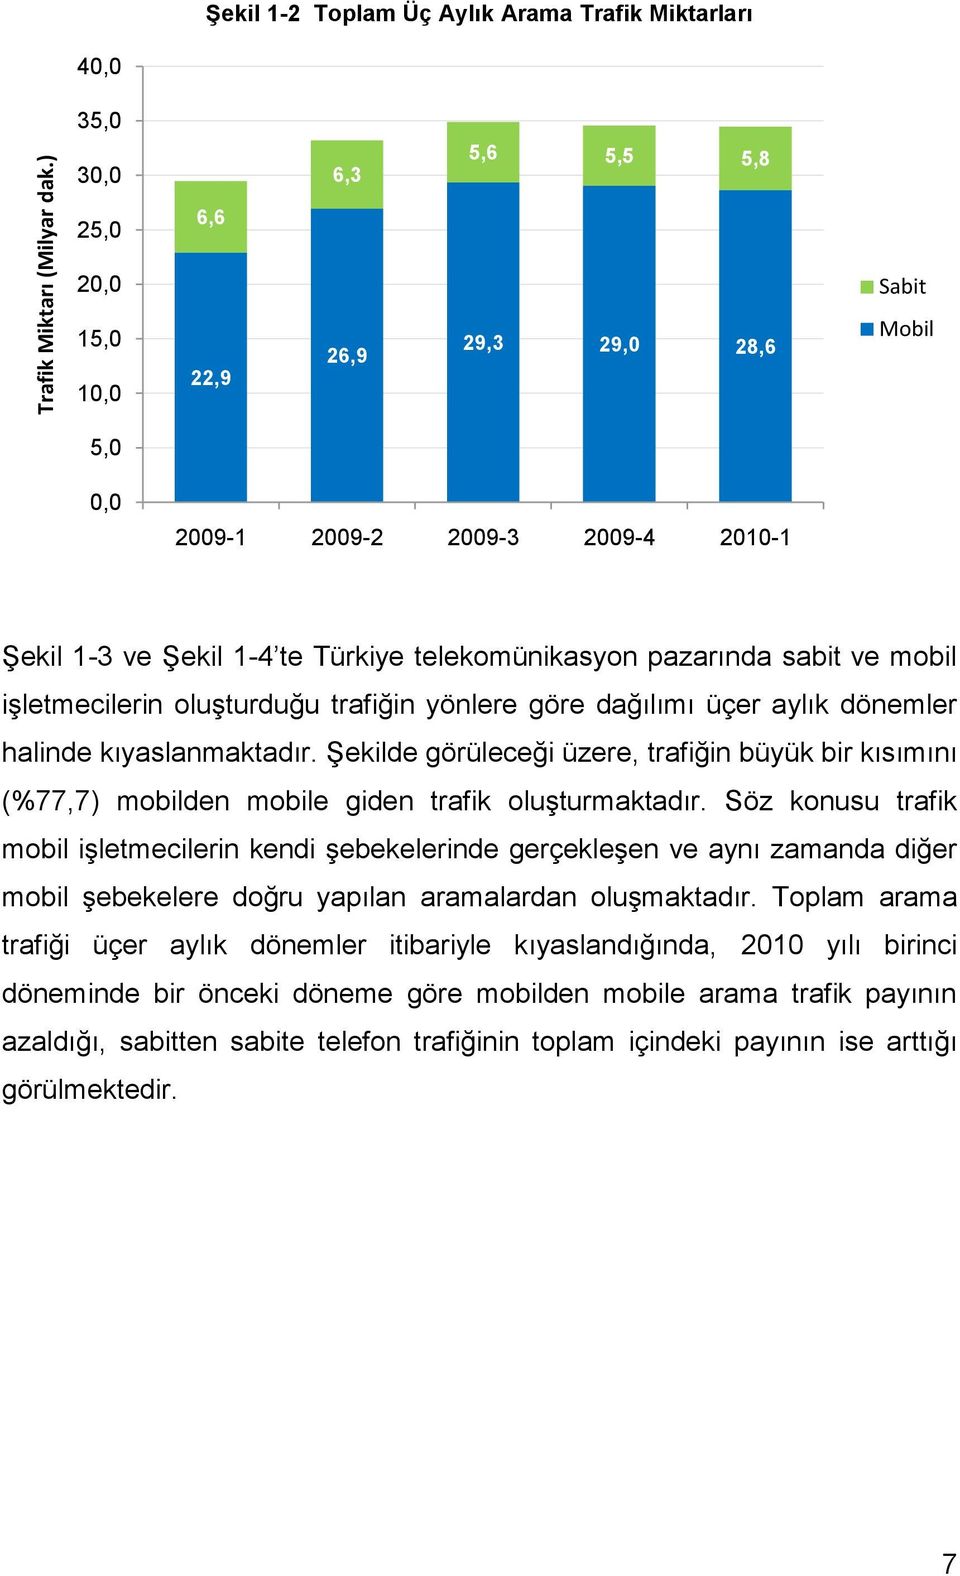 Şekil 1-4 te Türkiye telekomünikasyon pazarında sabit ve mobil işletmecilerin oluşturduğu trafiğin yönlere göre dağılımı üçer aylık dönemler halinde kıyaslanmaktadır.